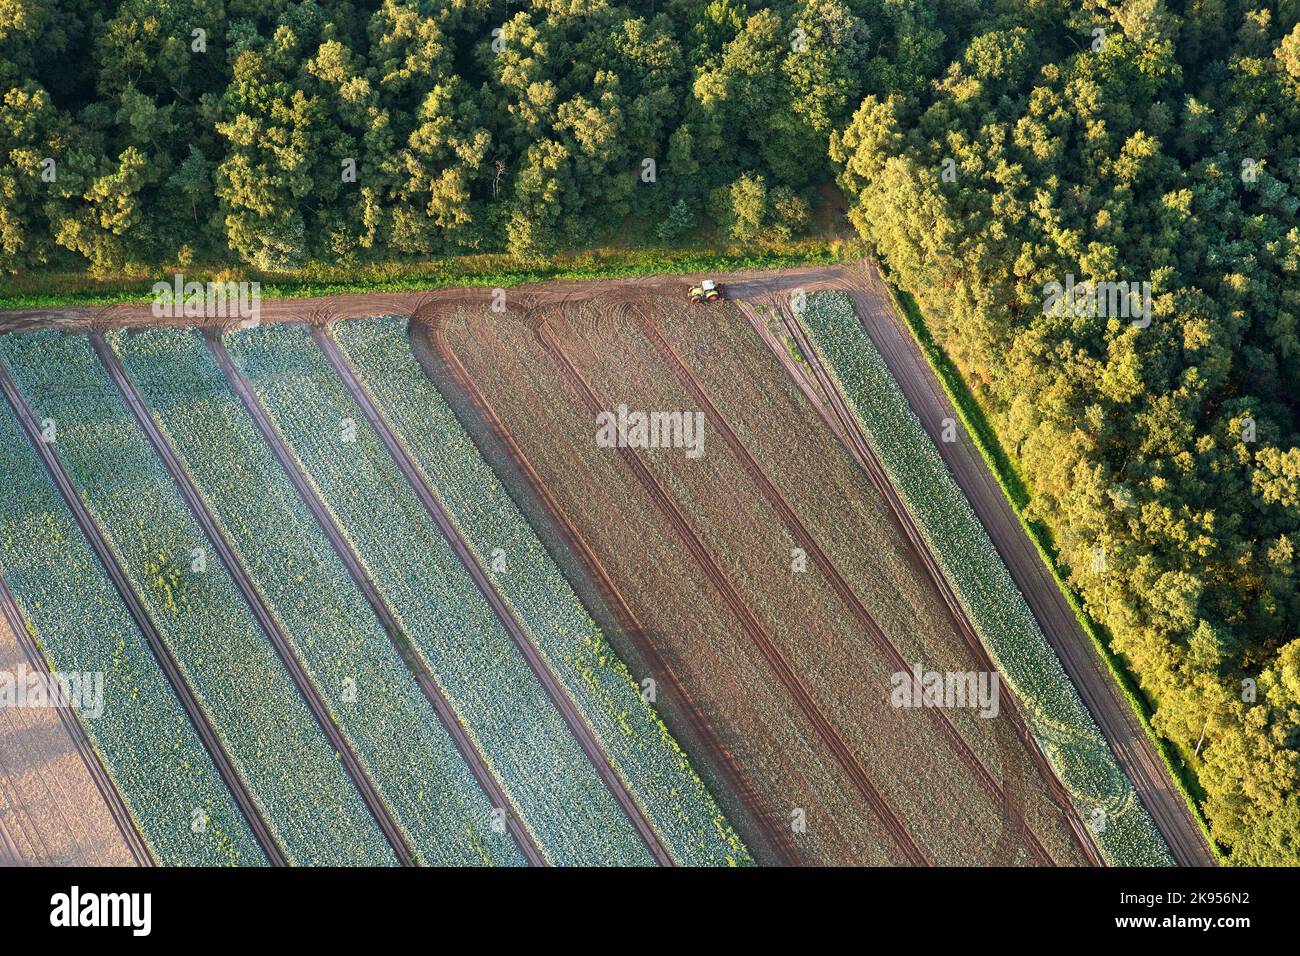 Champs de légumes au bord de la forêt, vue aérienne, Belgique, Anvers, Kalmthout, heide de Kalmthoutse Banque D'Images